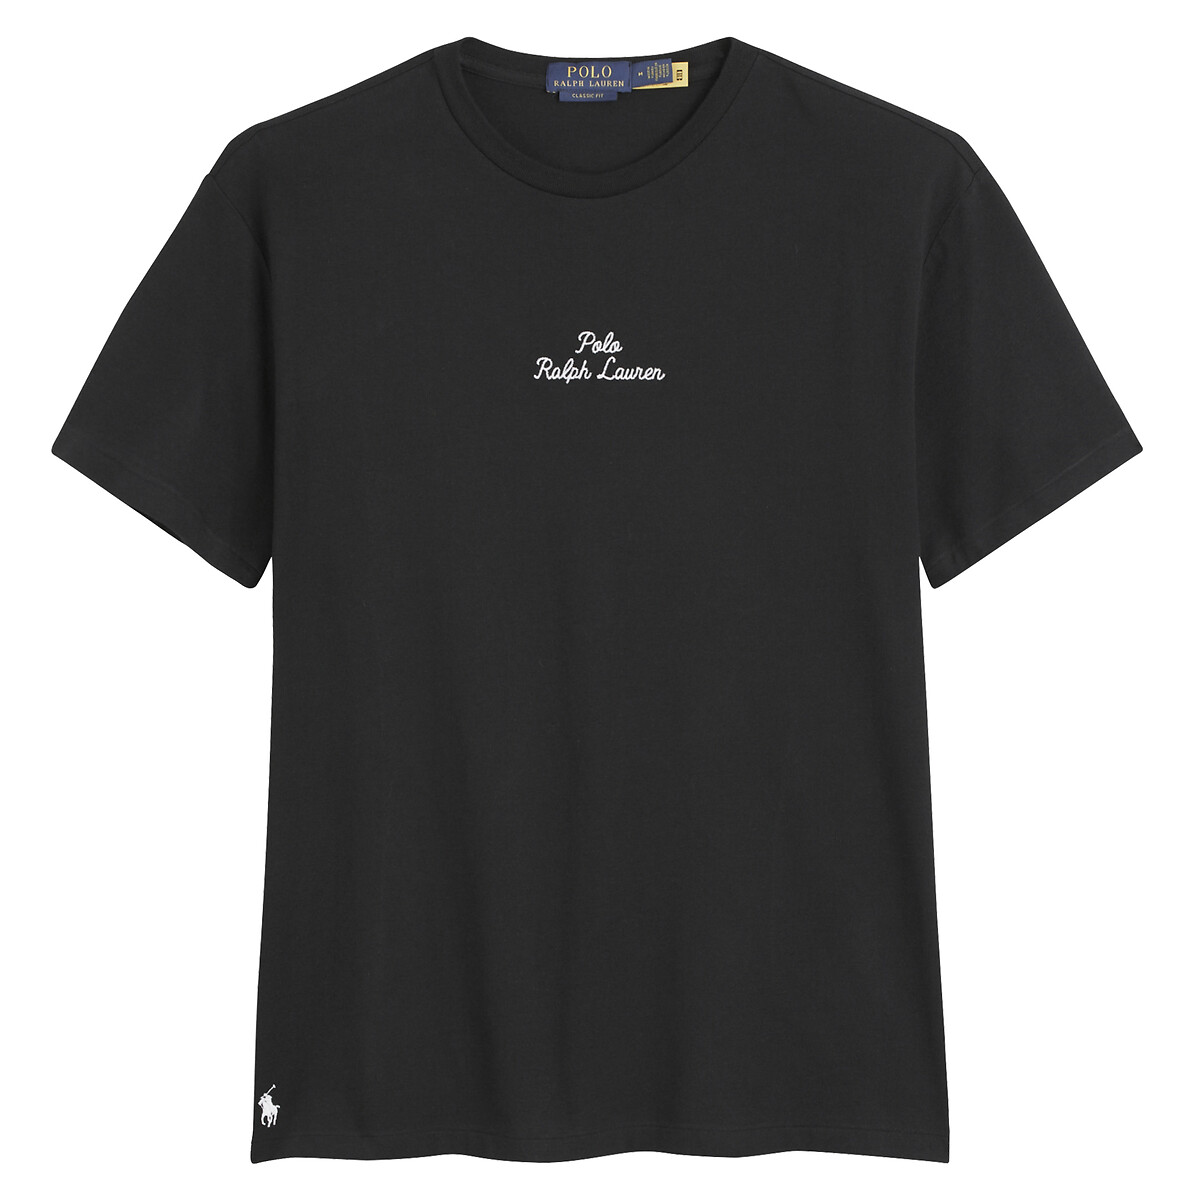 Футболка прямого покроя с логотипом XL черный футболка прямого покроя ellie m черный